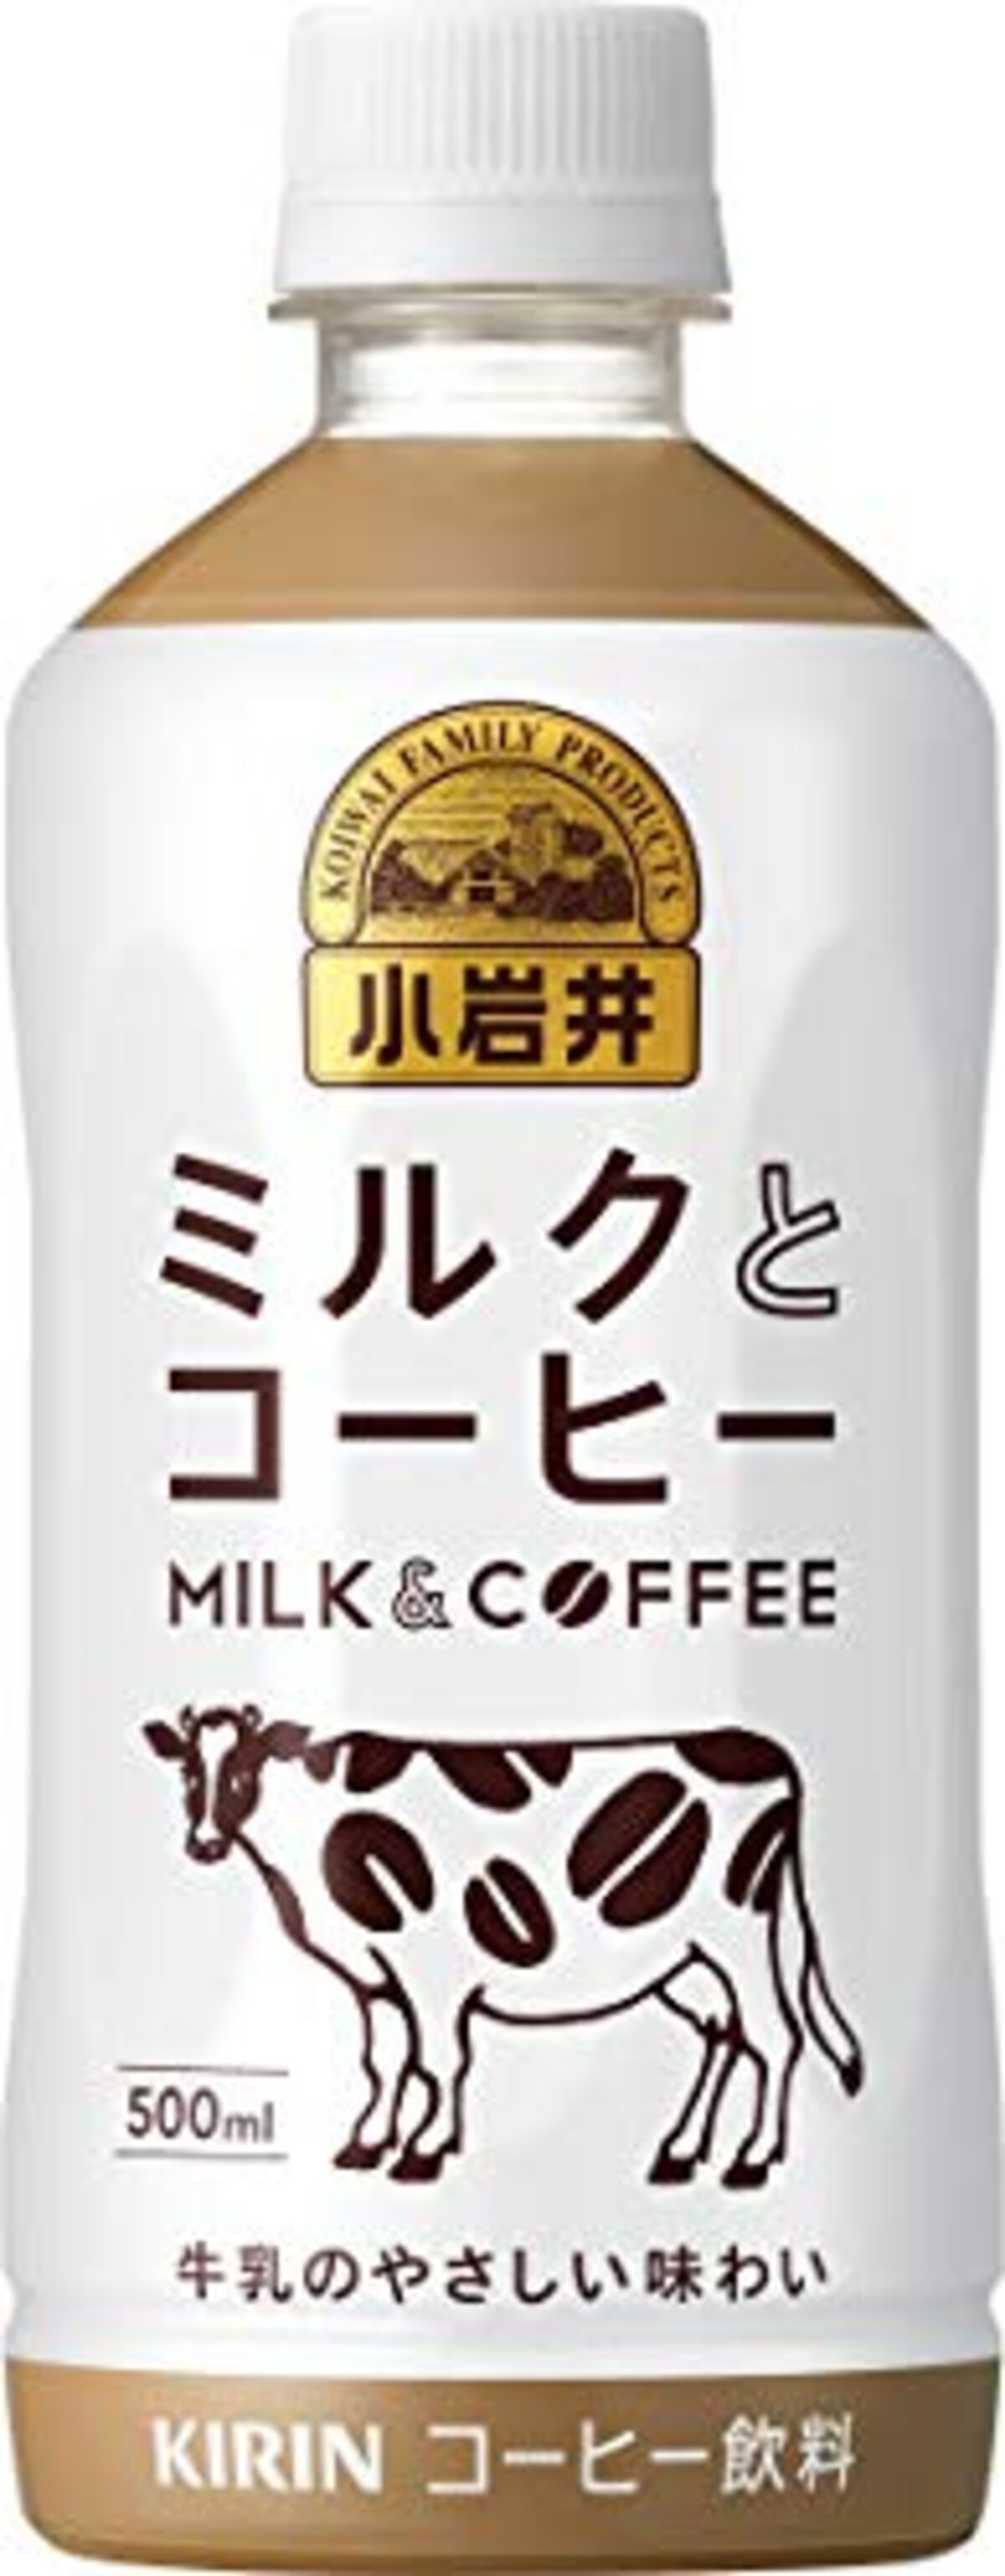 小岩井 ミルクとコーヒー 500mlPET ×24本